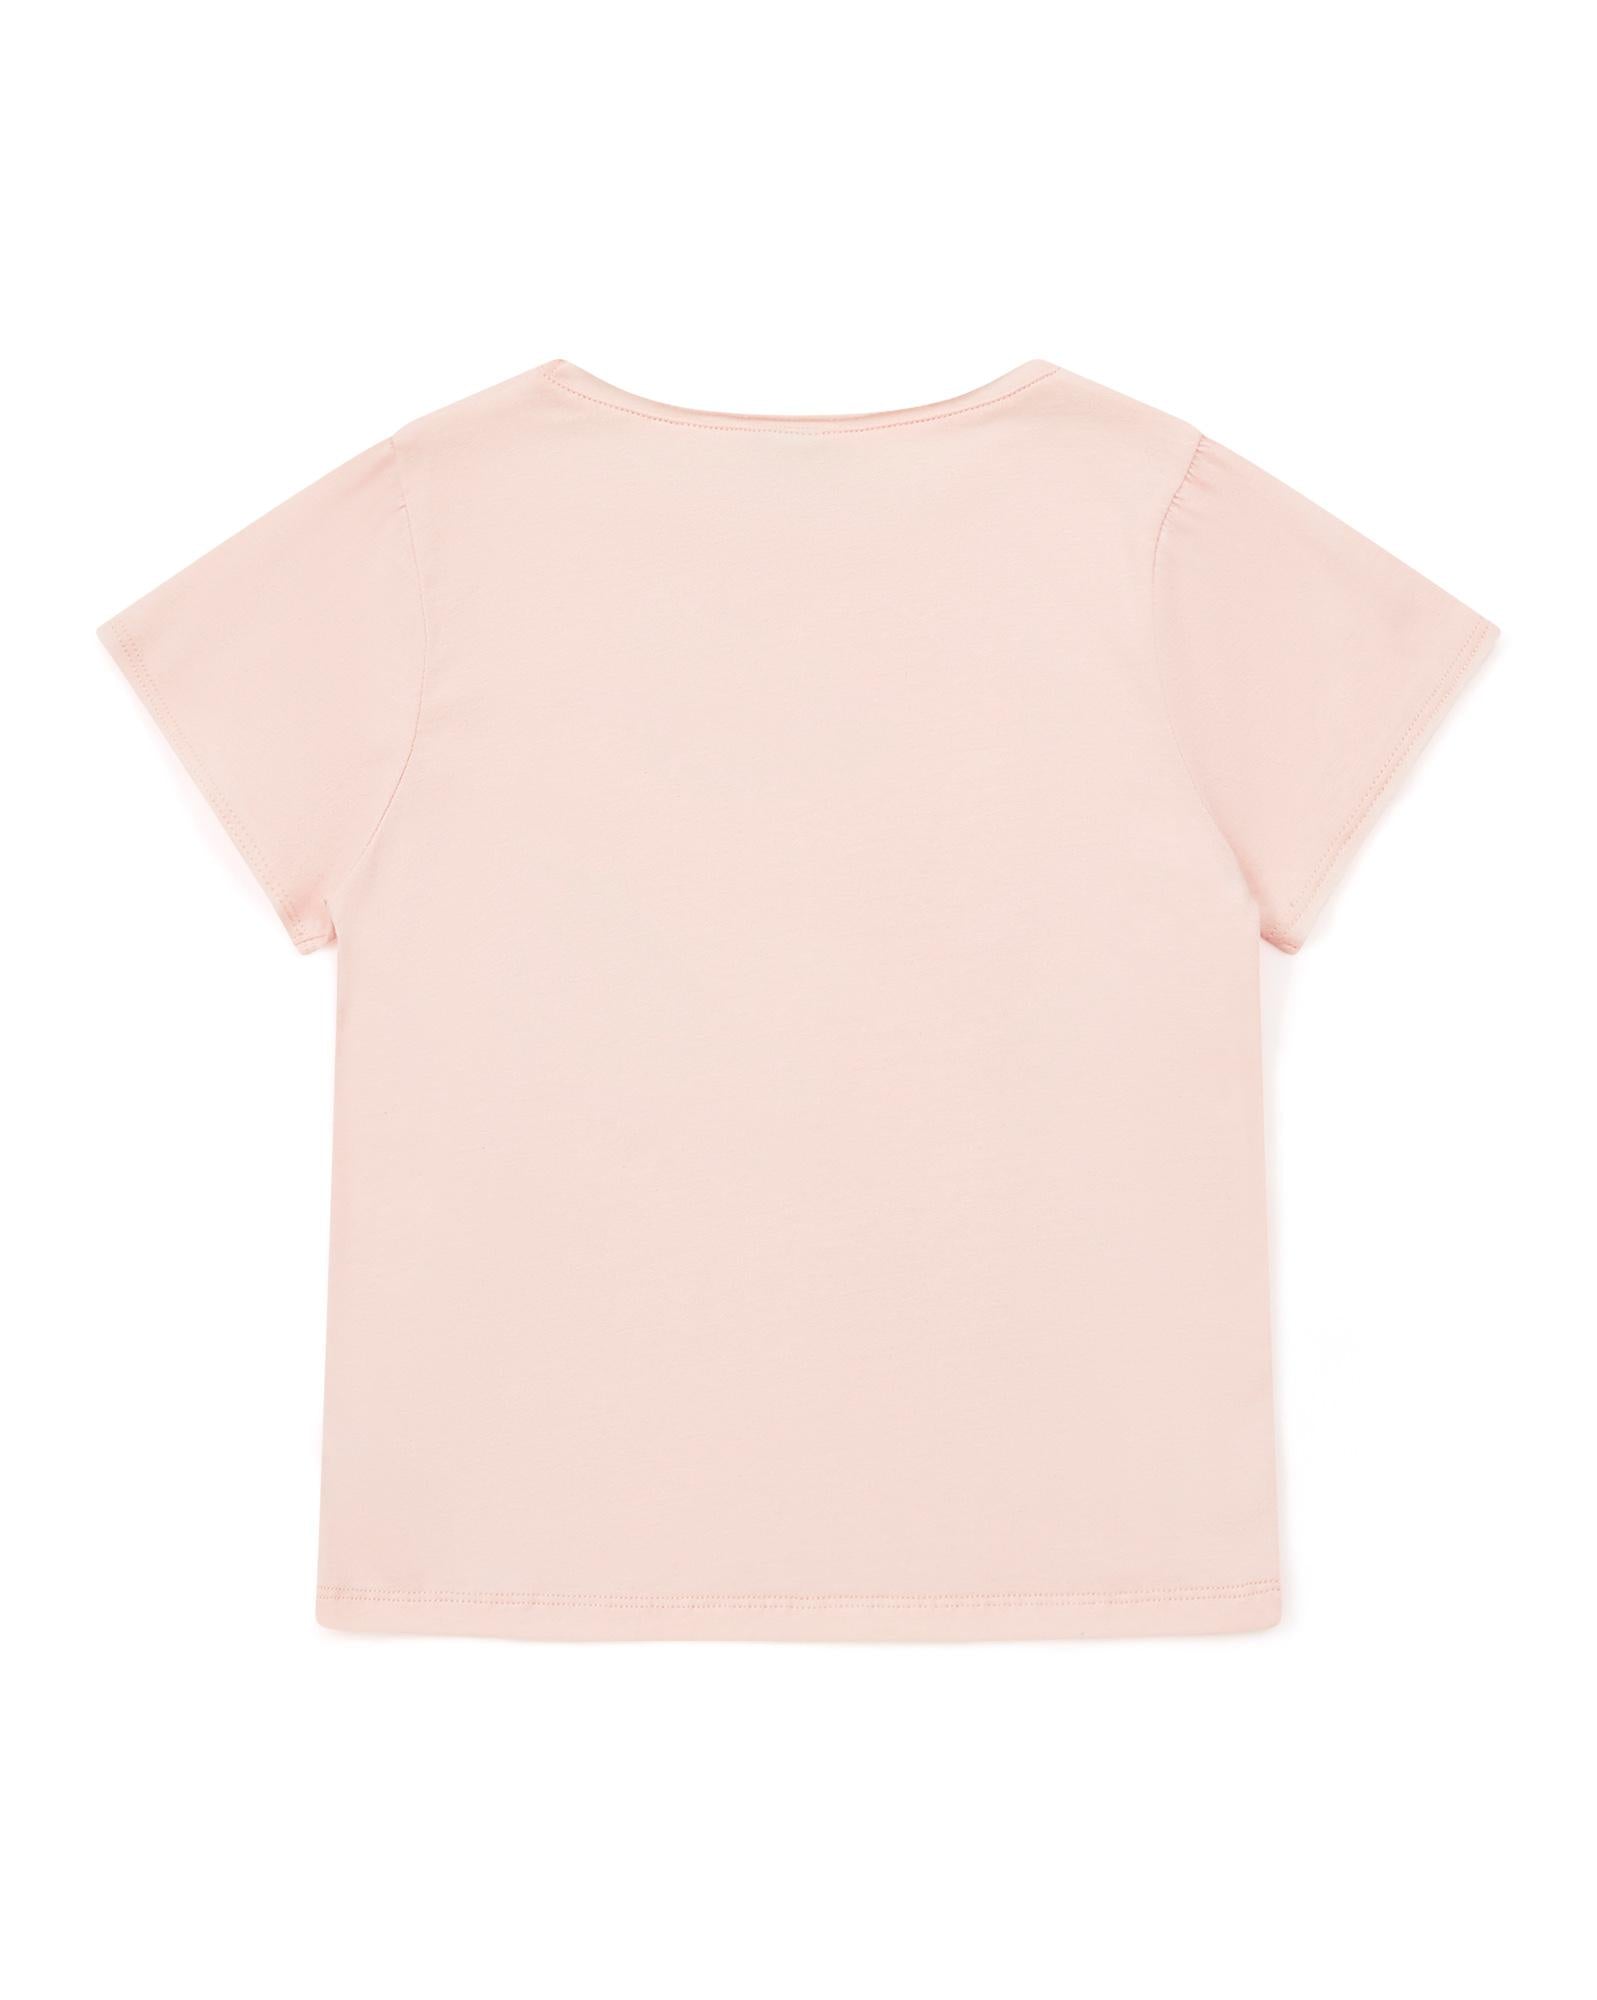 T-shirt Papillon rose en 100% coton biologique